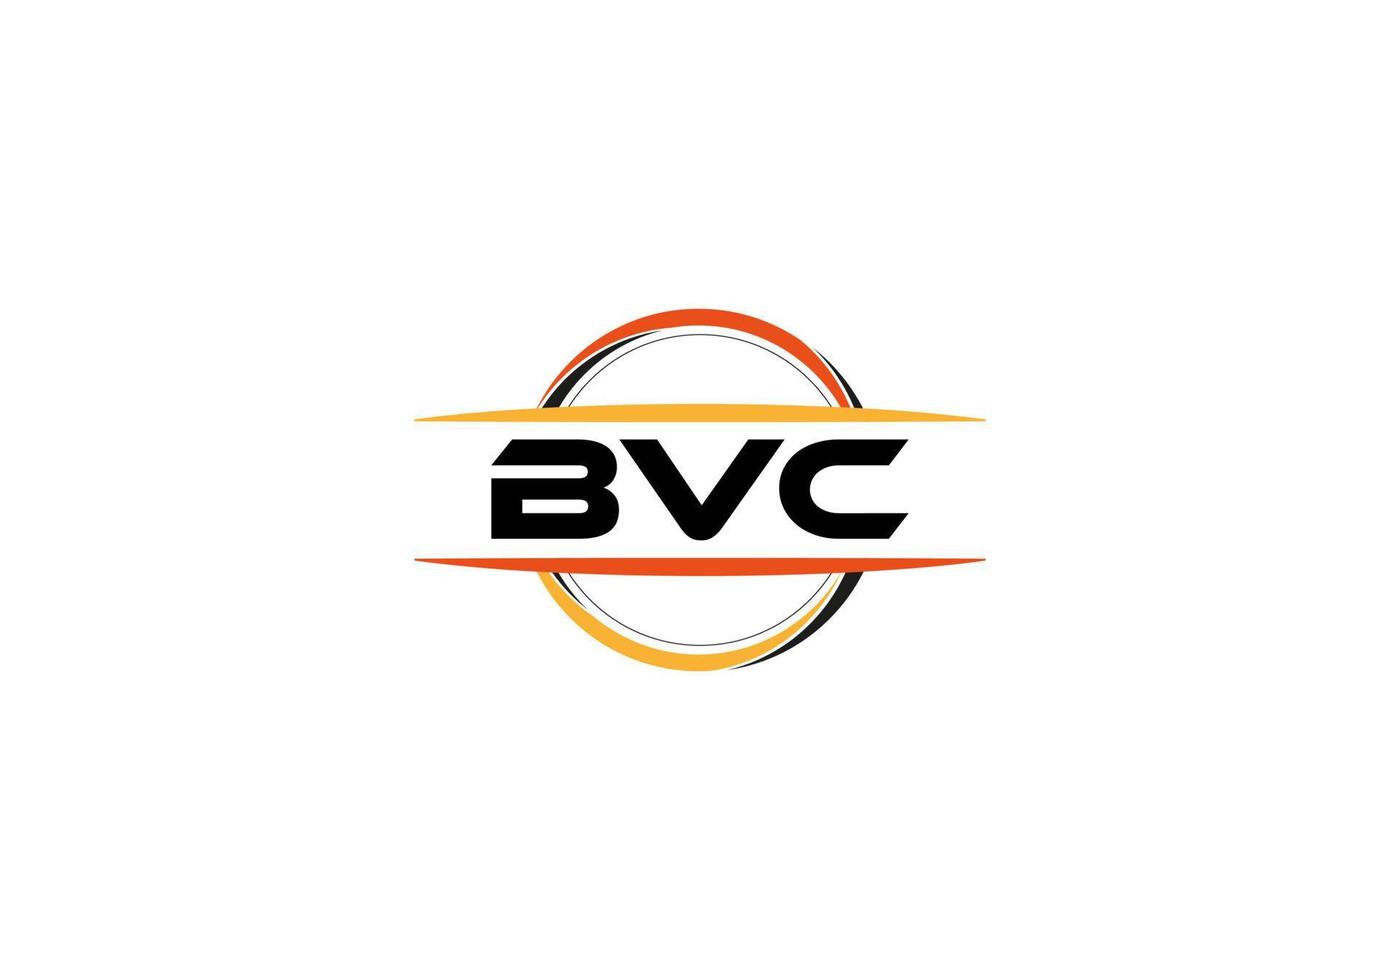 bvc-Buchstaben-Lizenzgebühren-Mandala-Form-Logo. bvc-Pinselkunst-Logo. bvc-Logo für ein Unternehmen, ein Geschäft und eine kommerzielle Nutzung. vektor